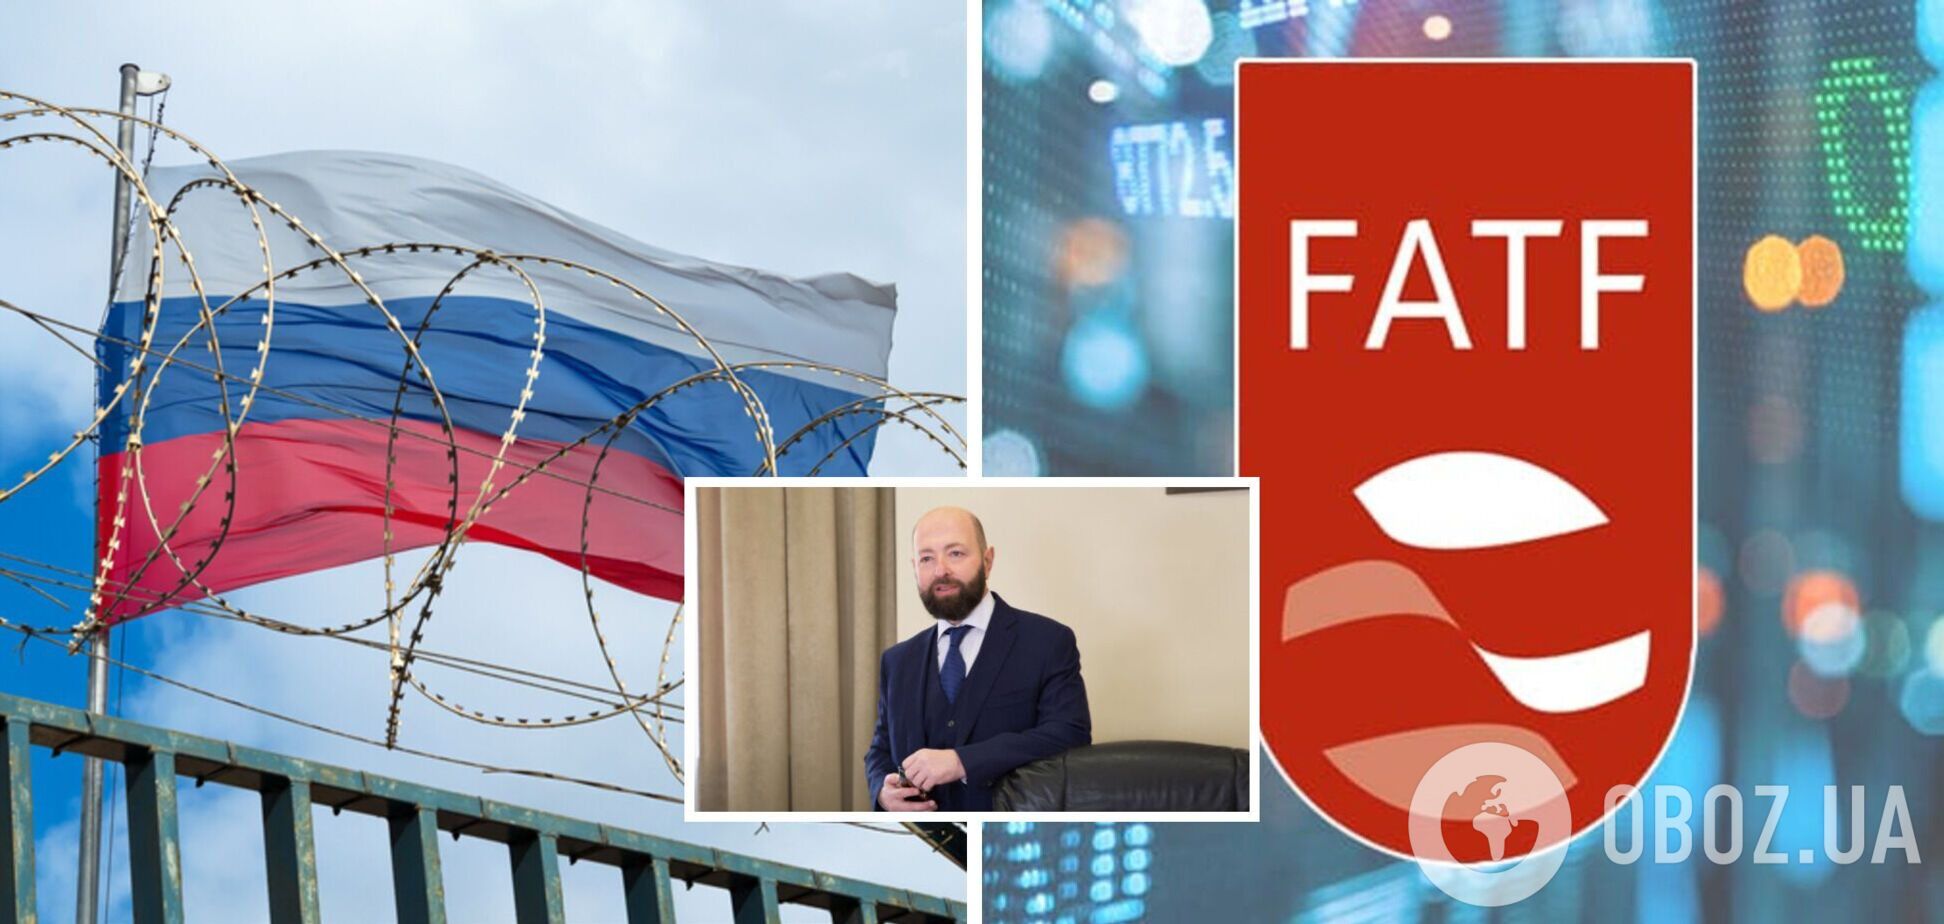 FATF не вернул РФ полноценное членство